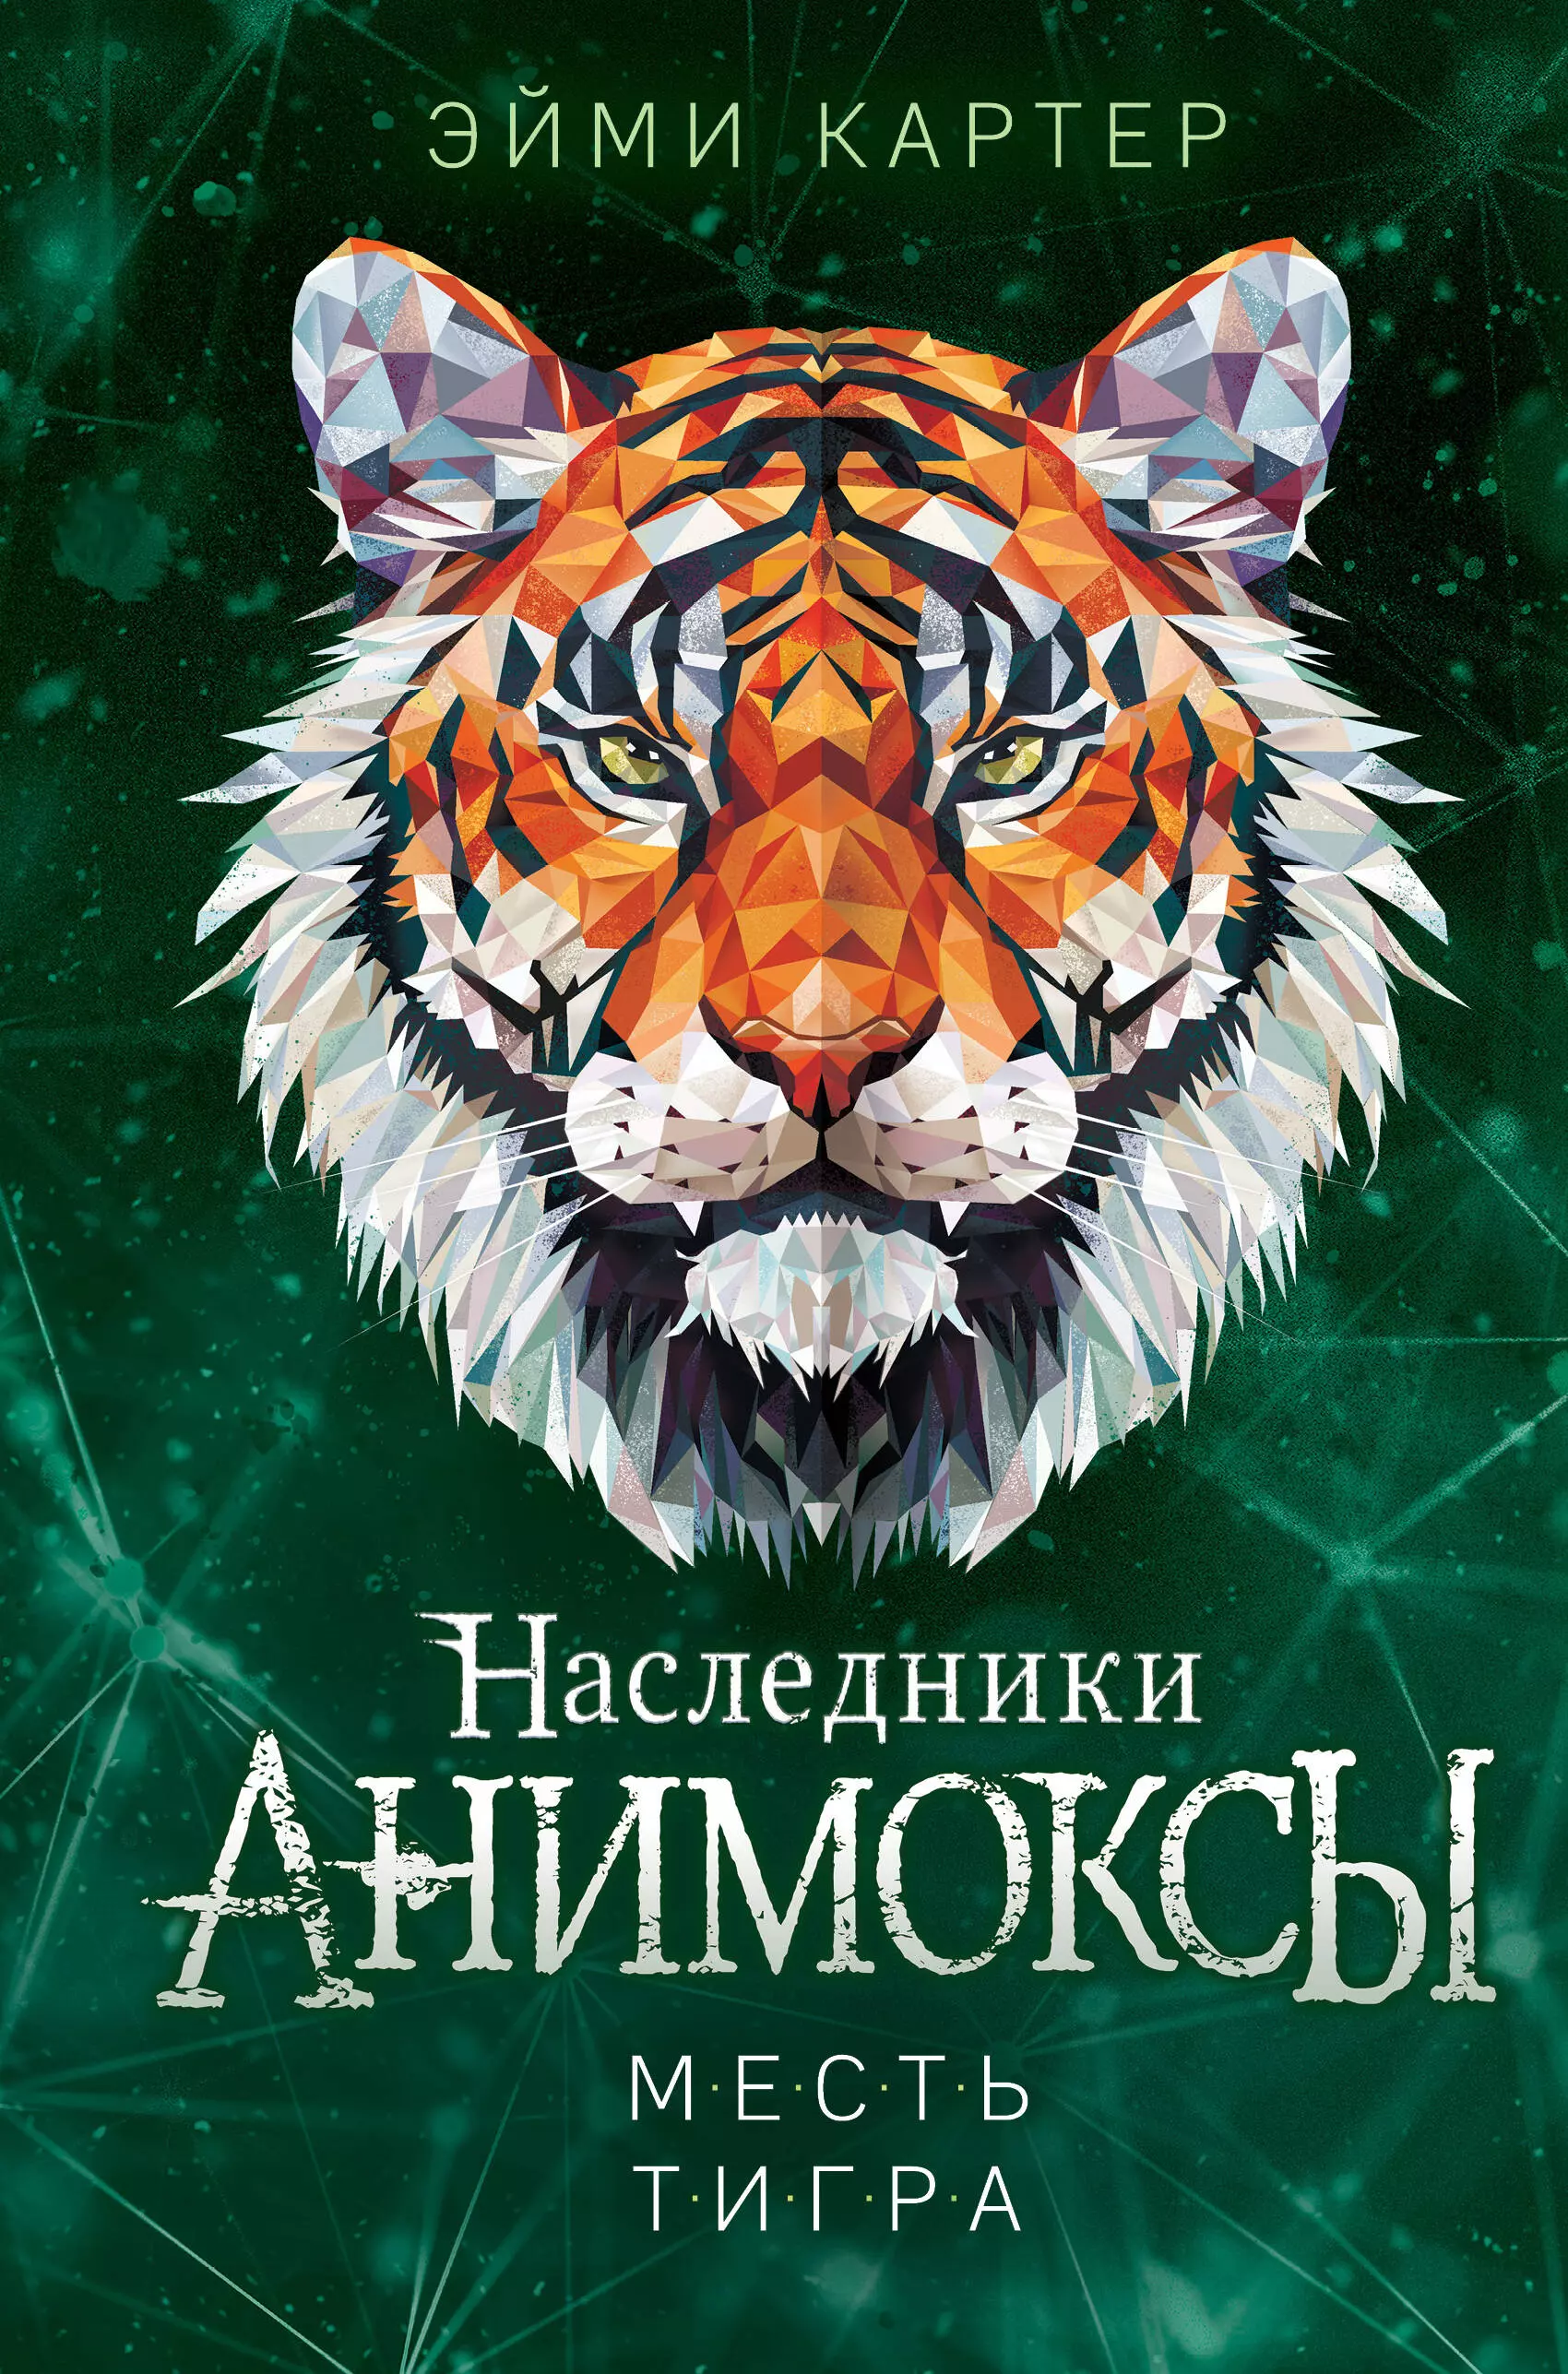 Картер Эйми Месть тигра (#10)